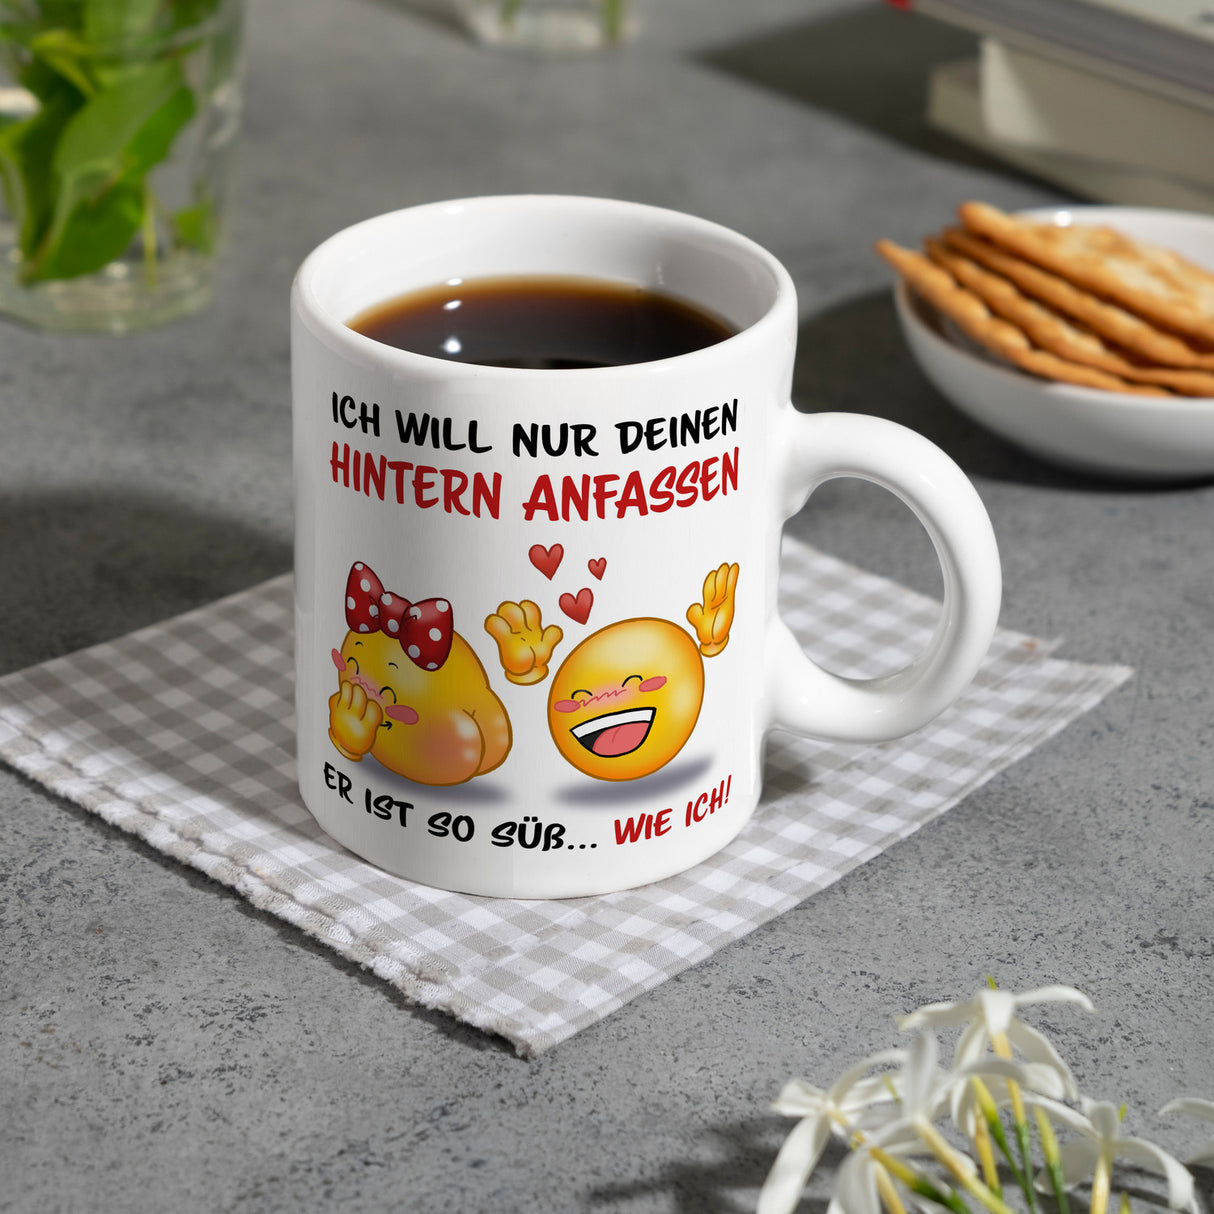 Hintern anfassen Kaffeebecher mit Emoticons und Spruch